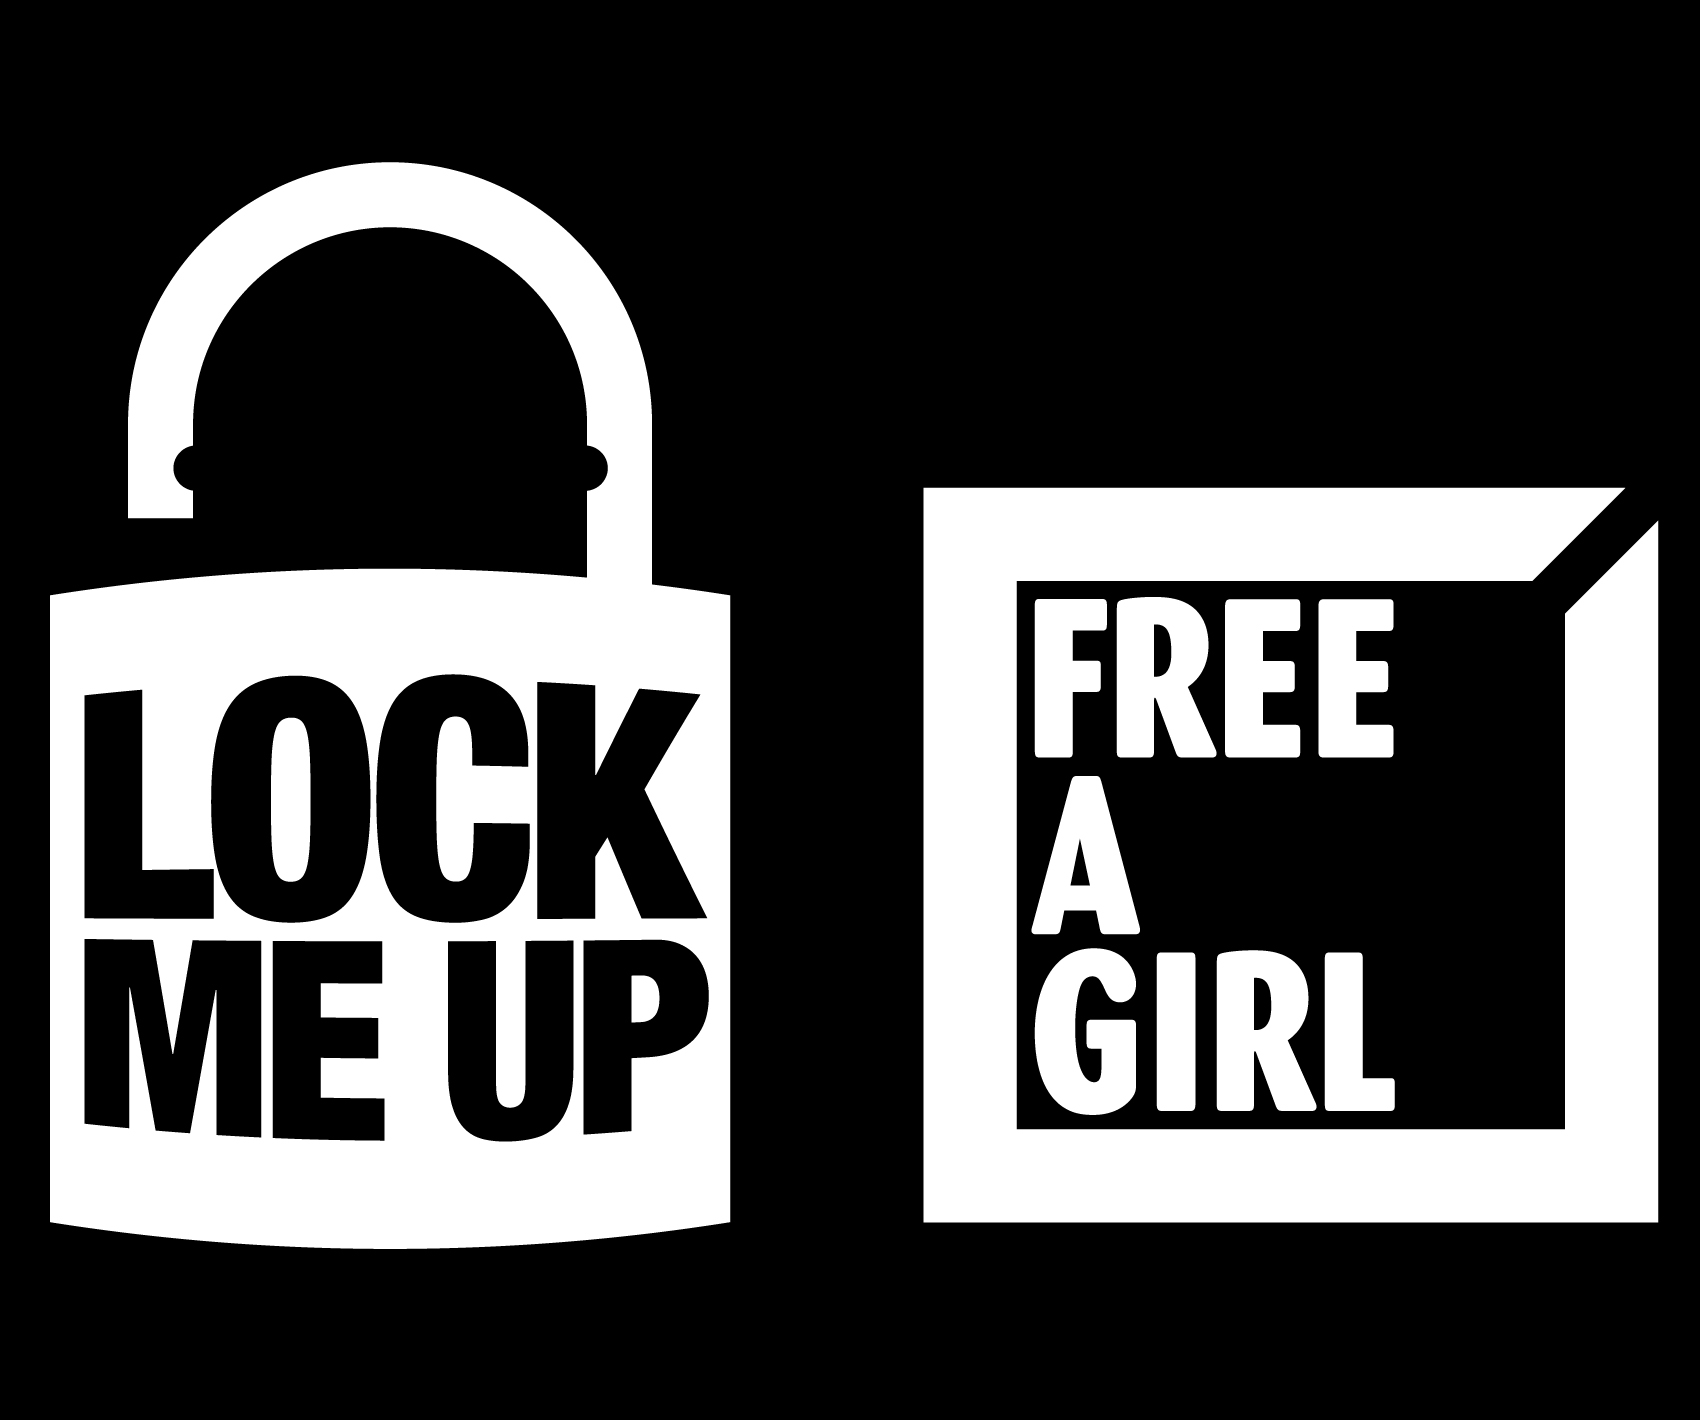 Actie voor Free a Girl